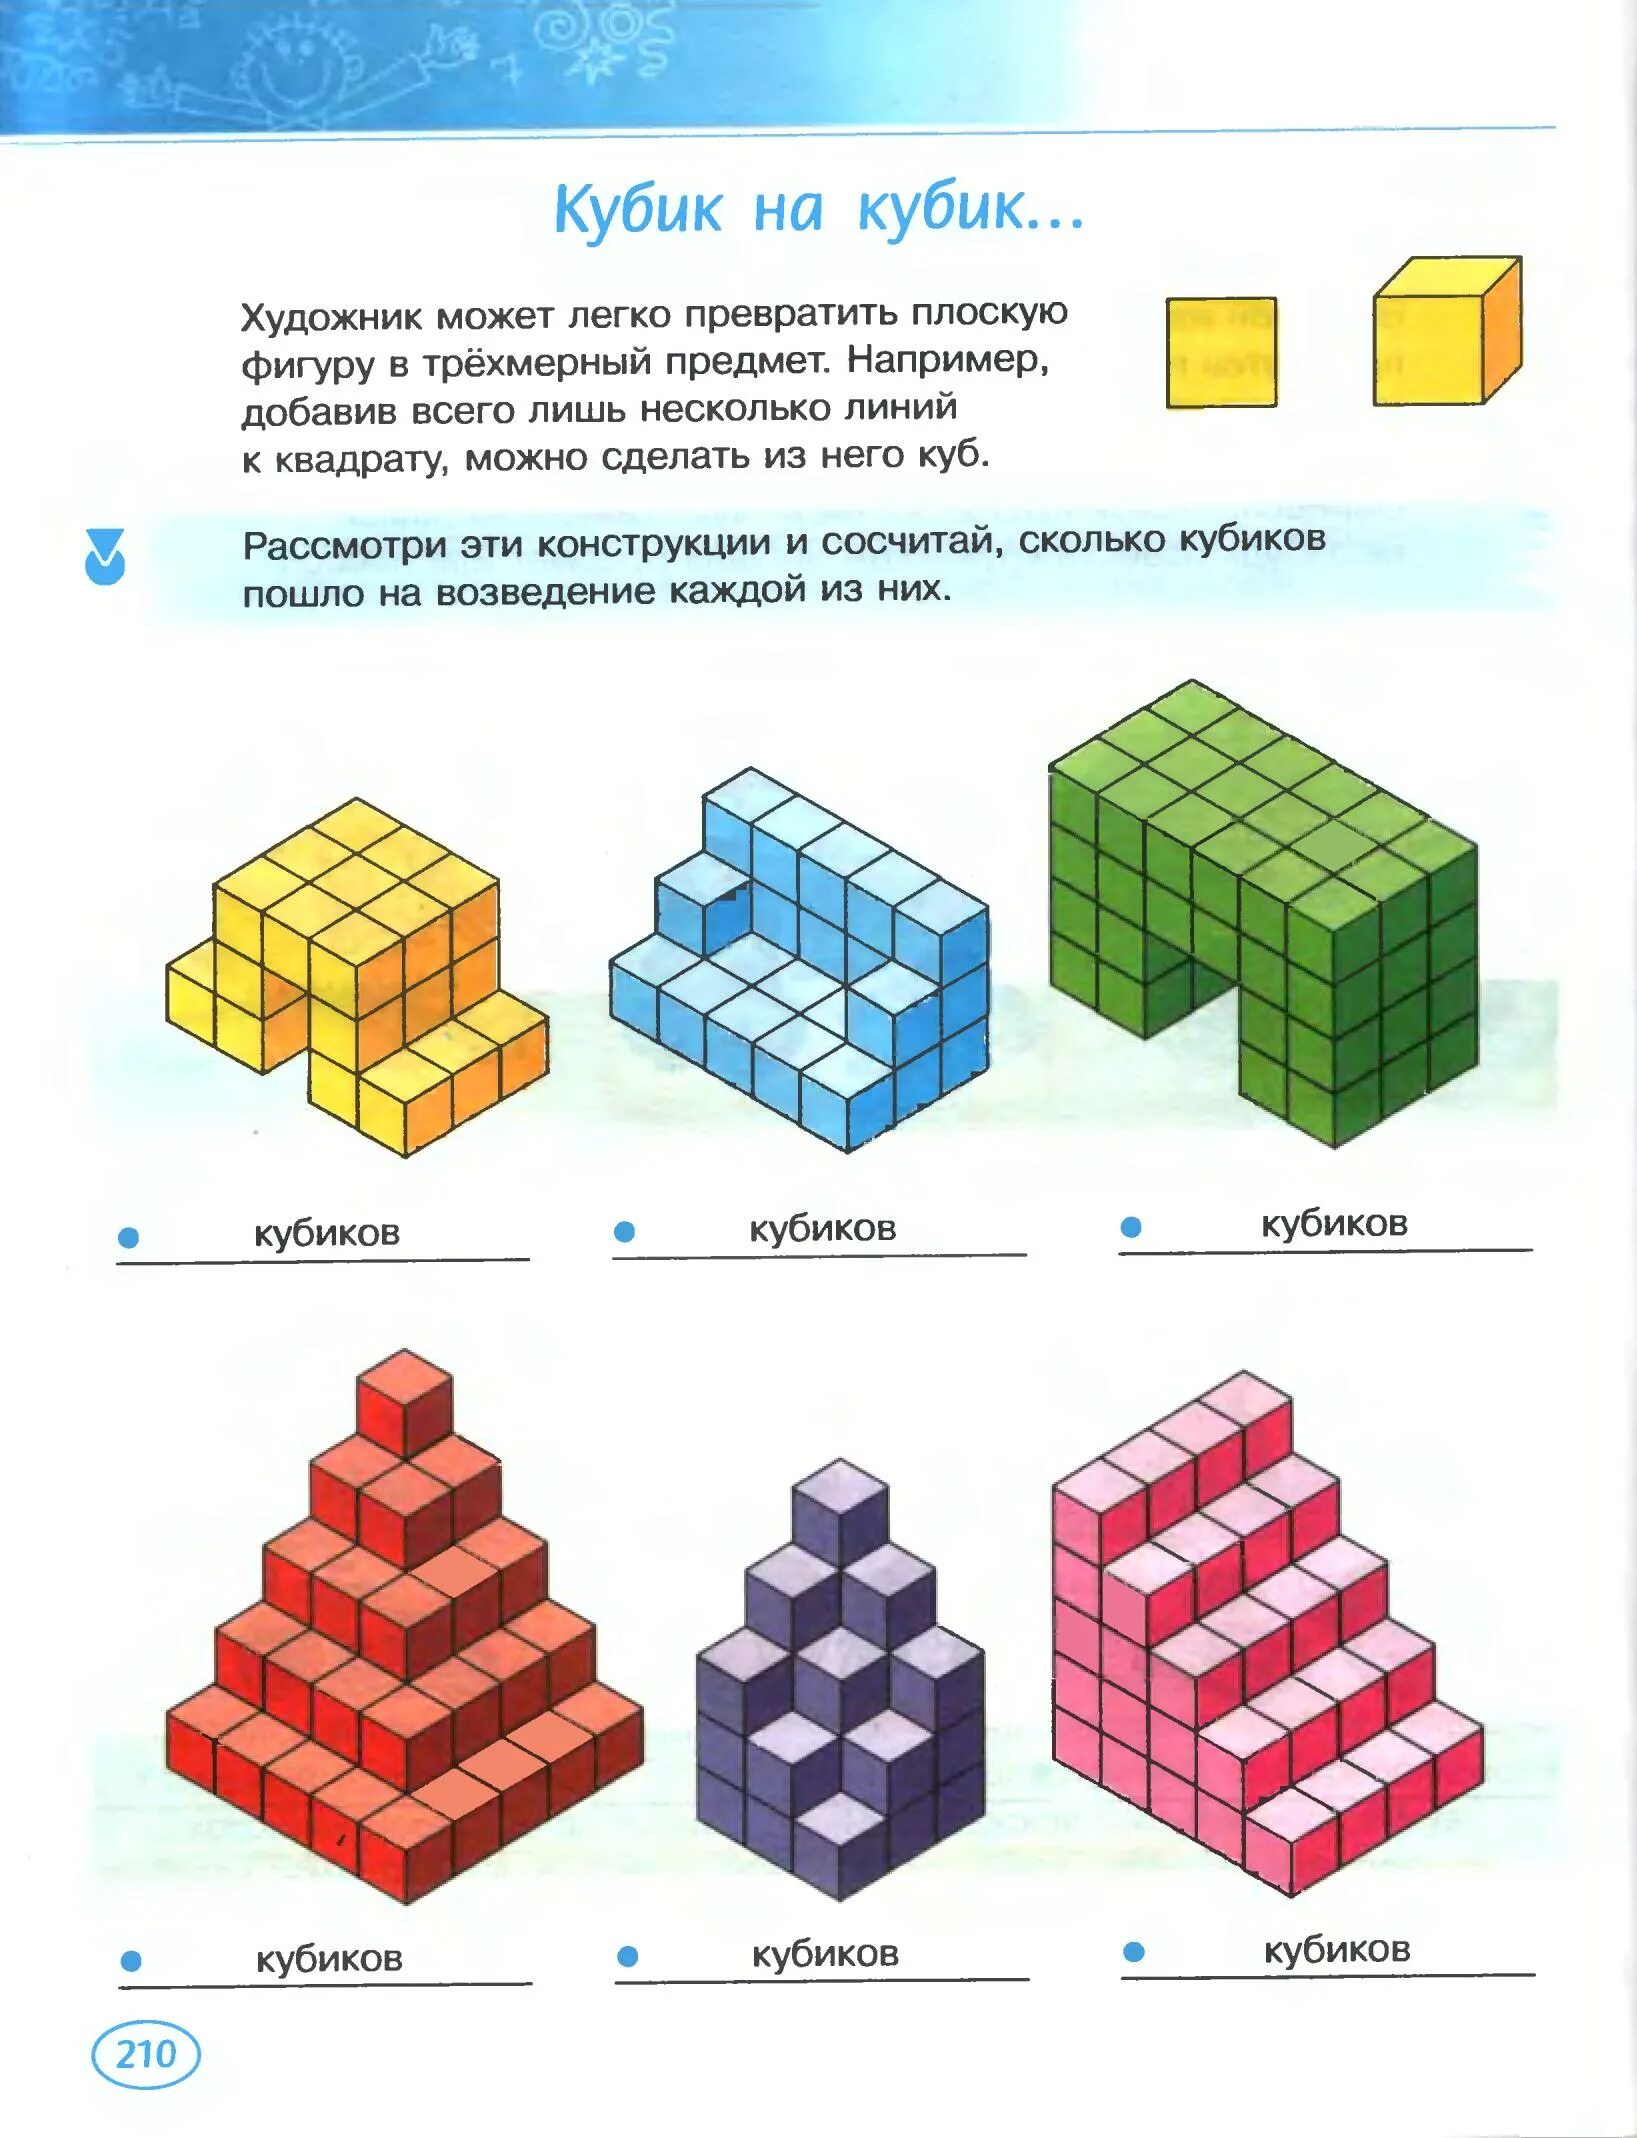 Фигуры из кубиков. Сосчитай кубики в фигуре. Посчитай количество кубиков. Объемные фигуры из кубиков.